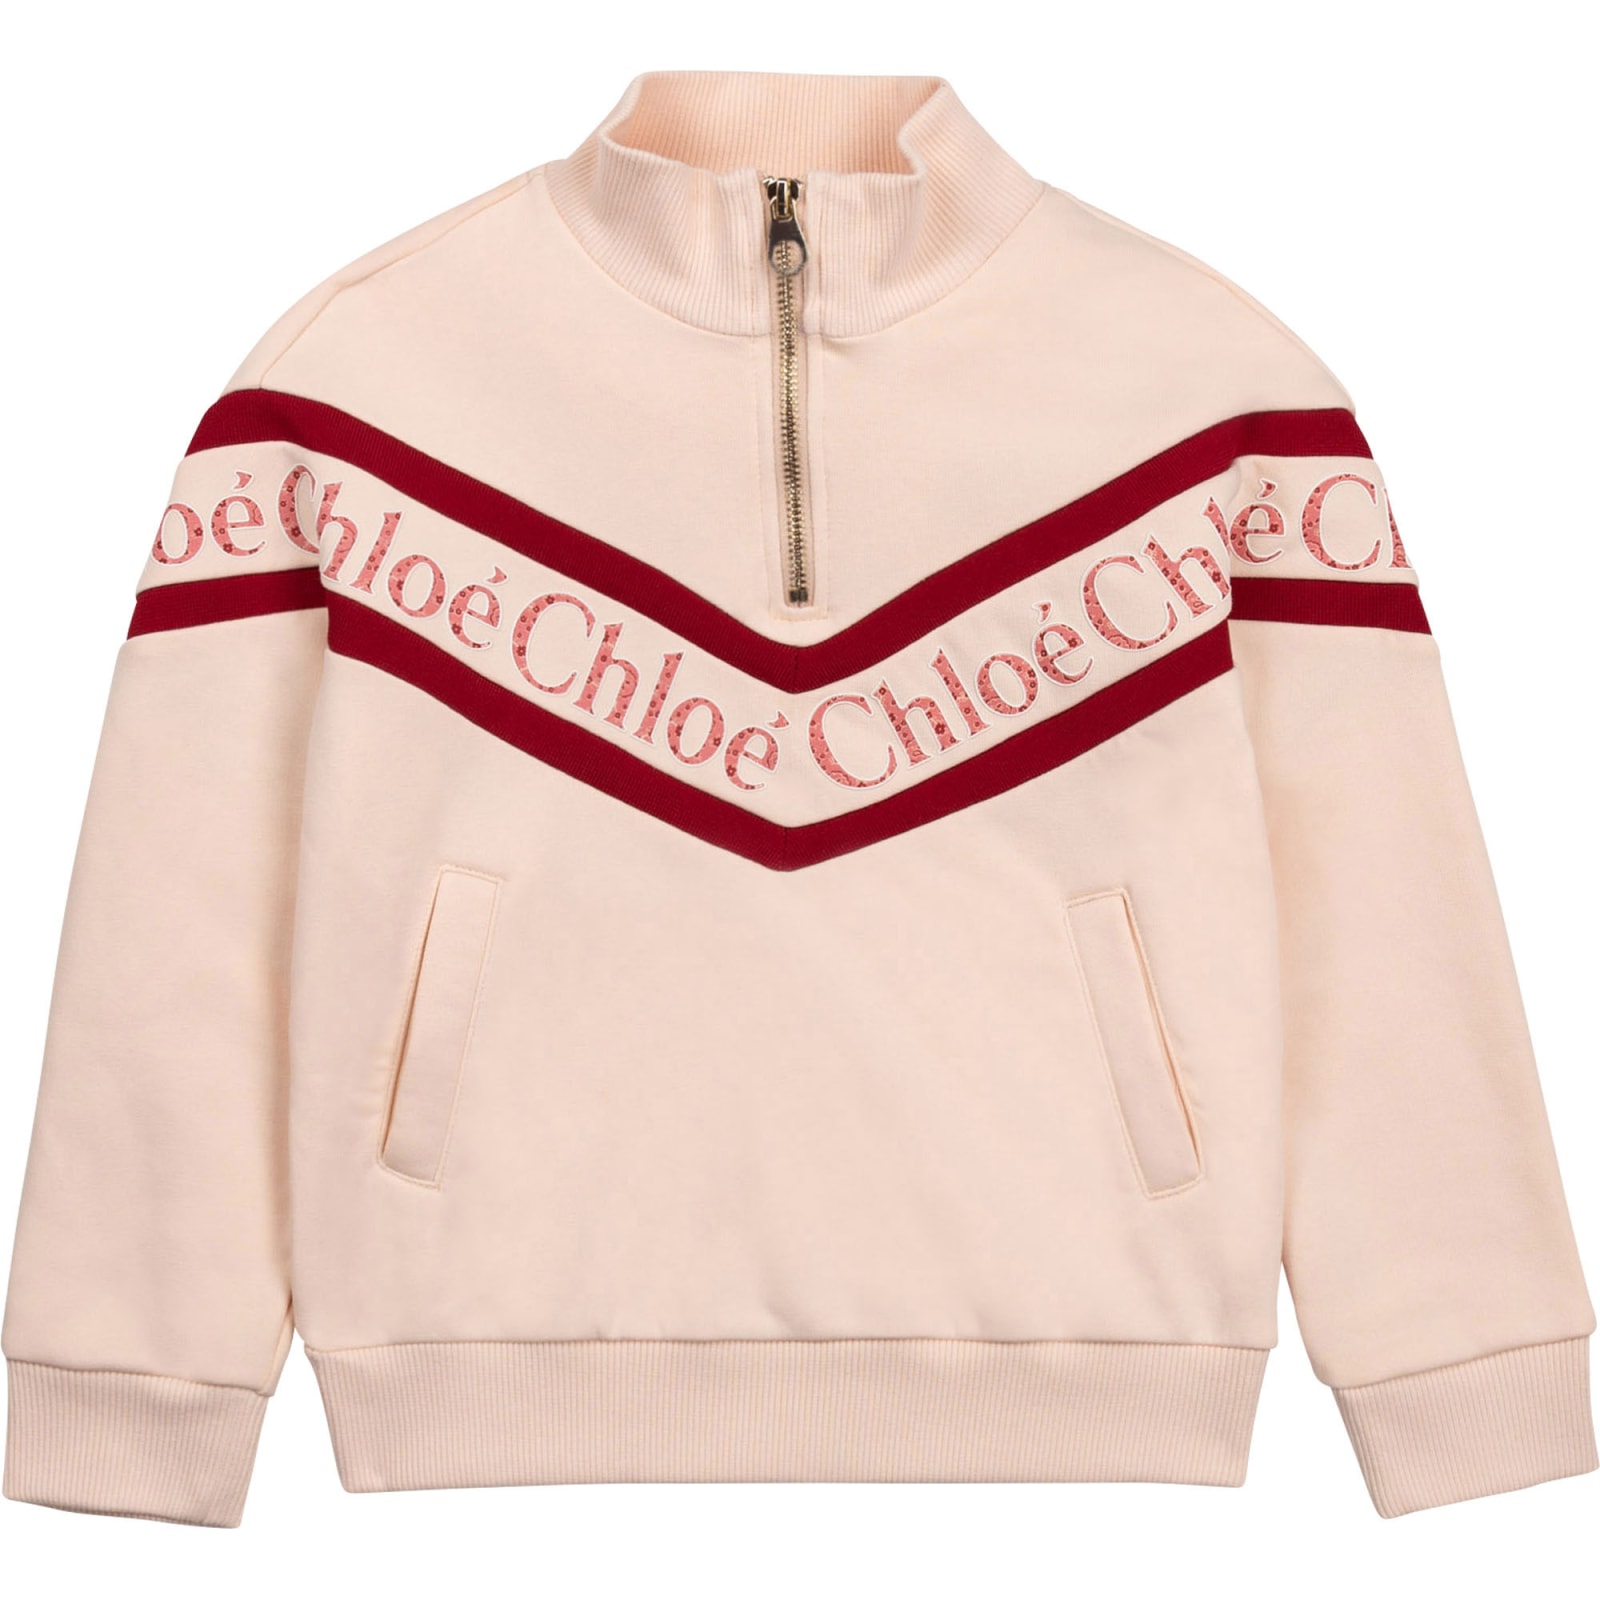 Chloé Sweatshirt With Zip